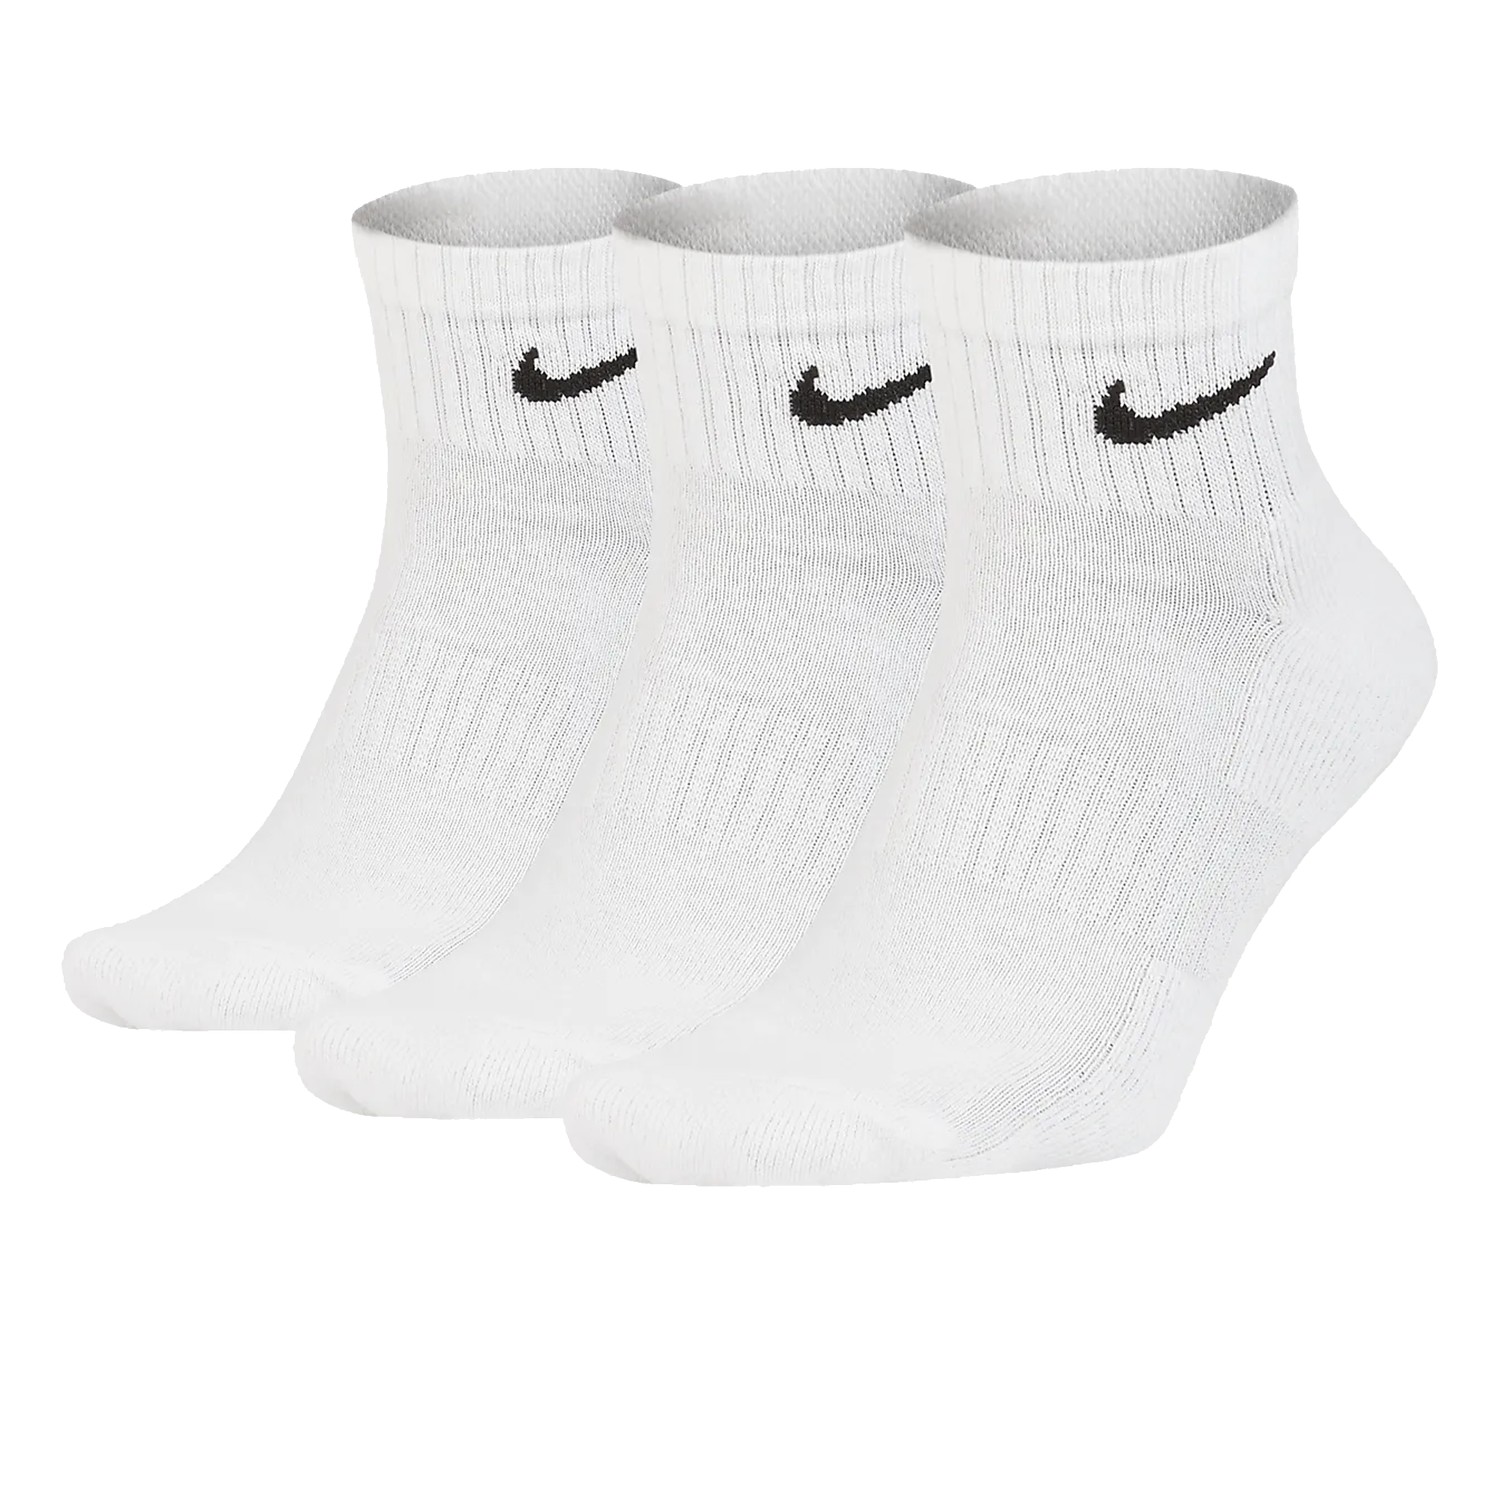 Chaussettes de foot enfant marque Nike - Nike